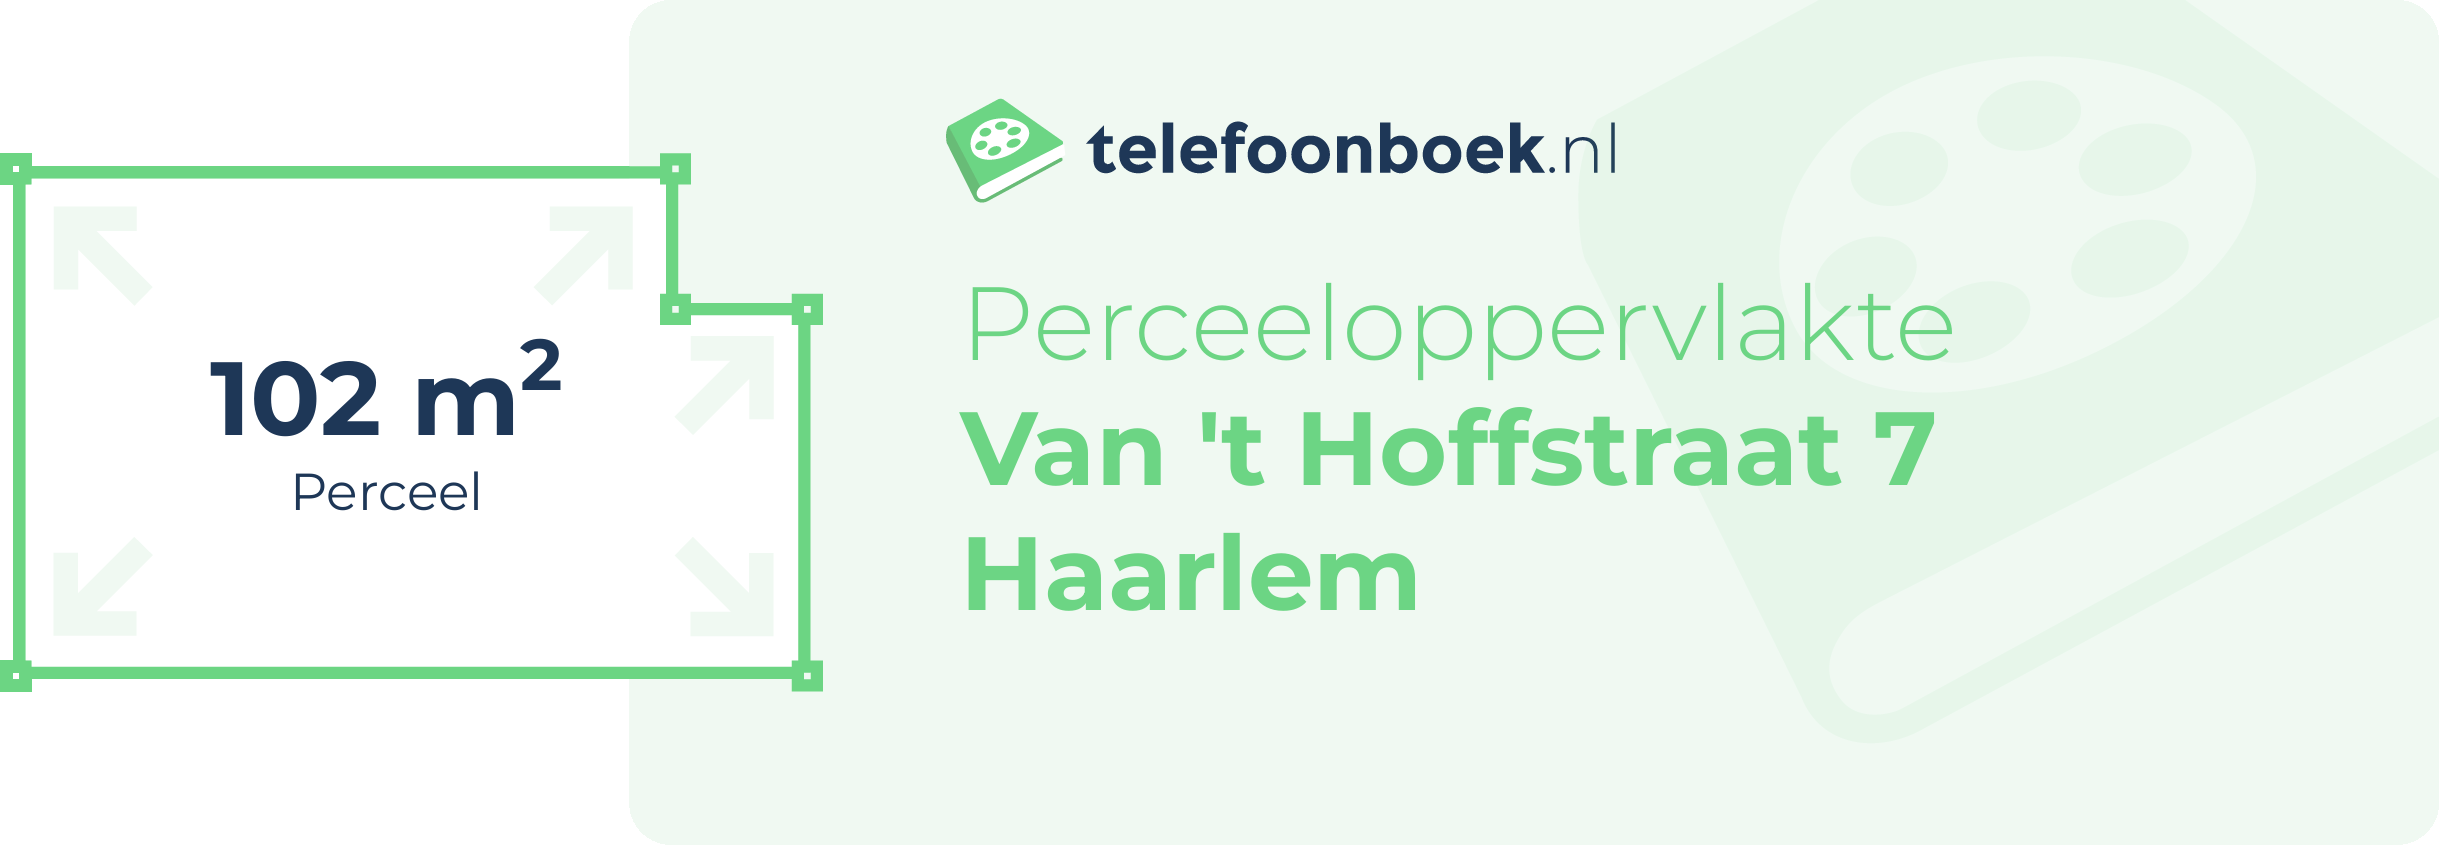 Perceeloppervlakte Van 't Hoffstraat 7 Haarlem